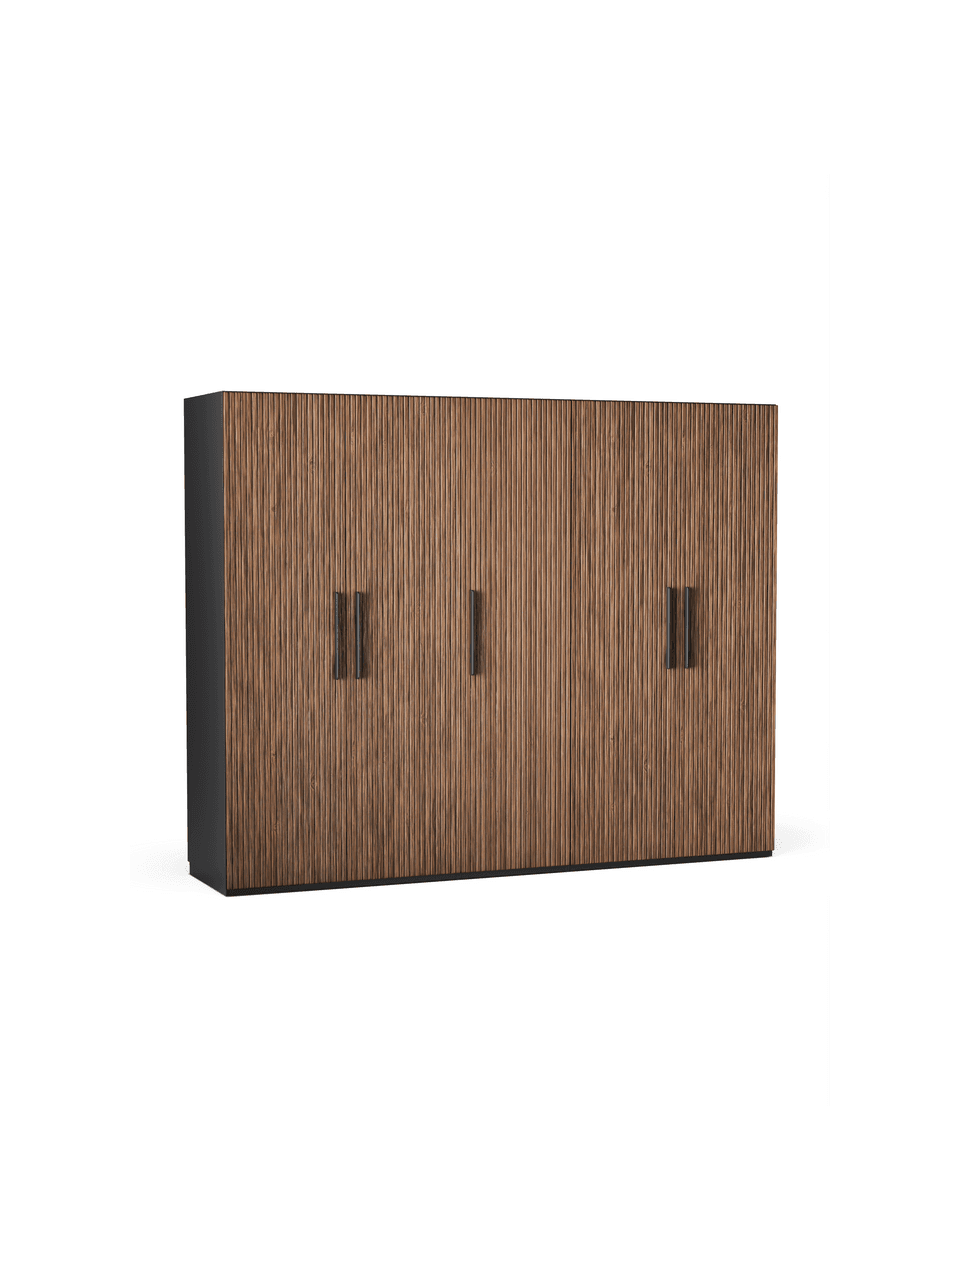 Szafa modułowa Simone, 250 cm, różne warianty, Korpus: płyta wiórowa z certyfika, O wyglądzie drewna orzecha włoskiego, czarny, W 236 cm, Premium